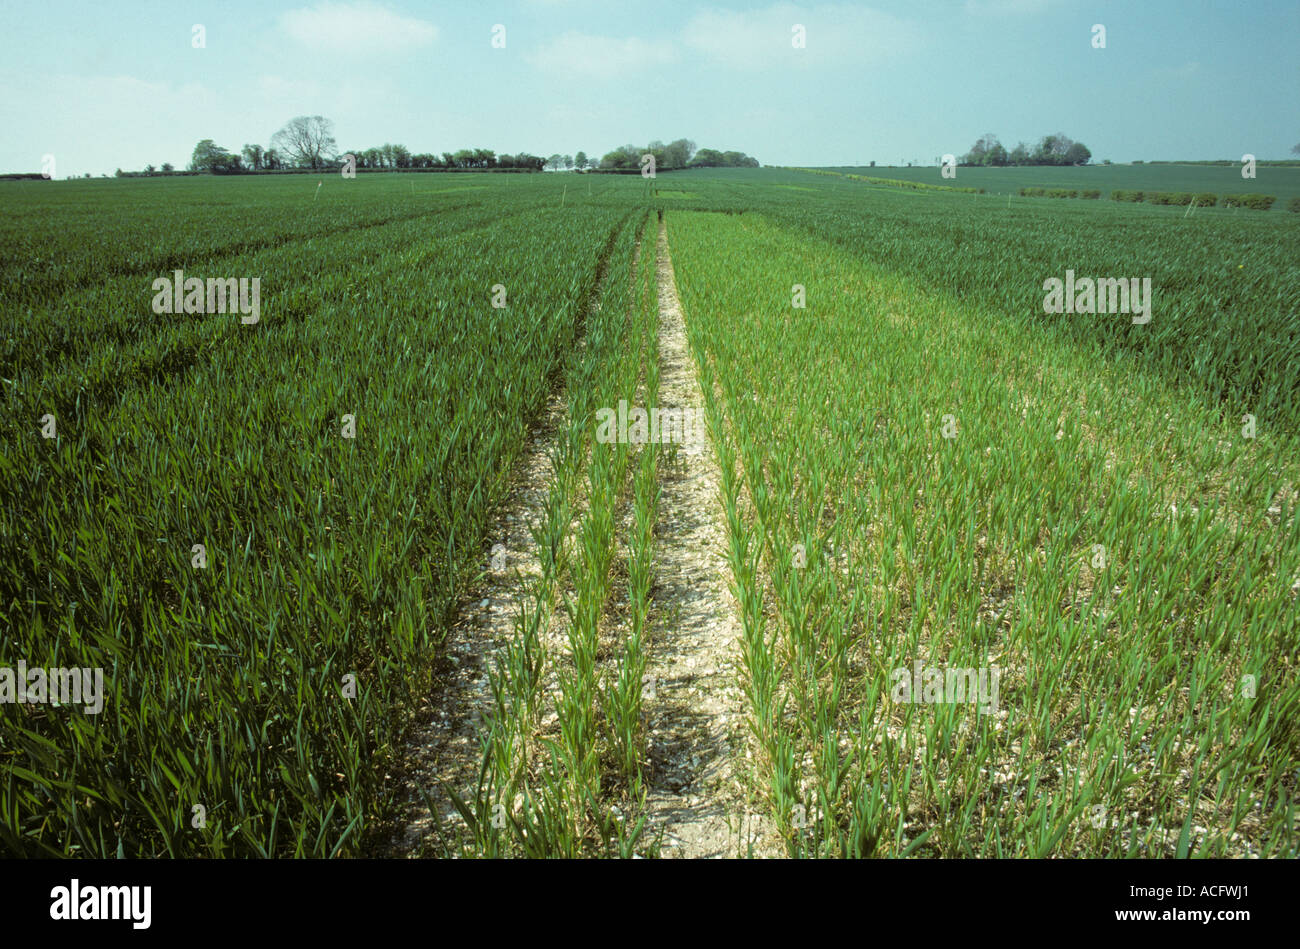 Les parcelles de cultures de blé avec l'application d'engrais azote normal par rapport à gauche pas d'engrais Banque D'Images